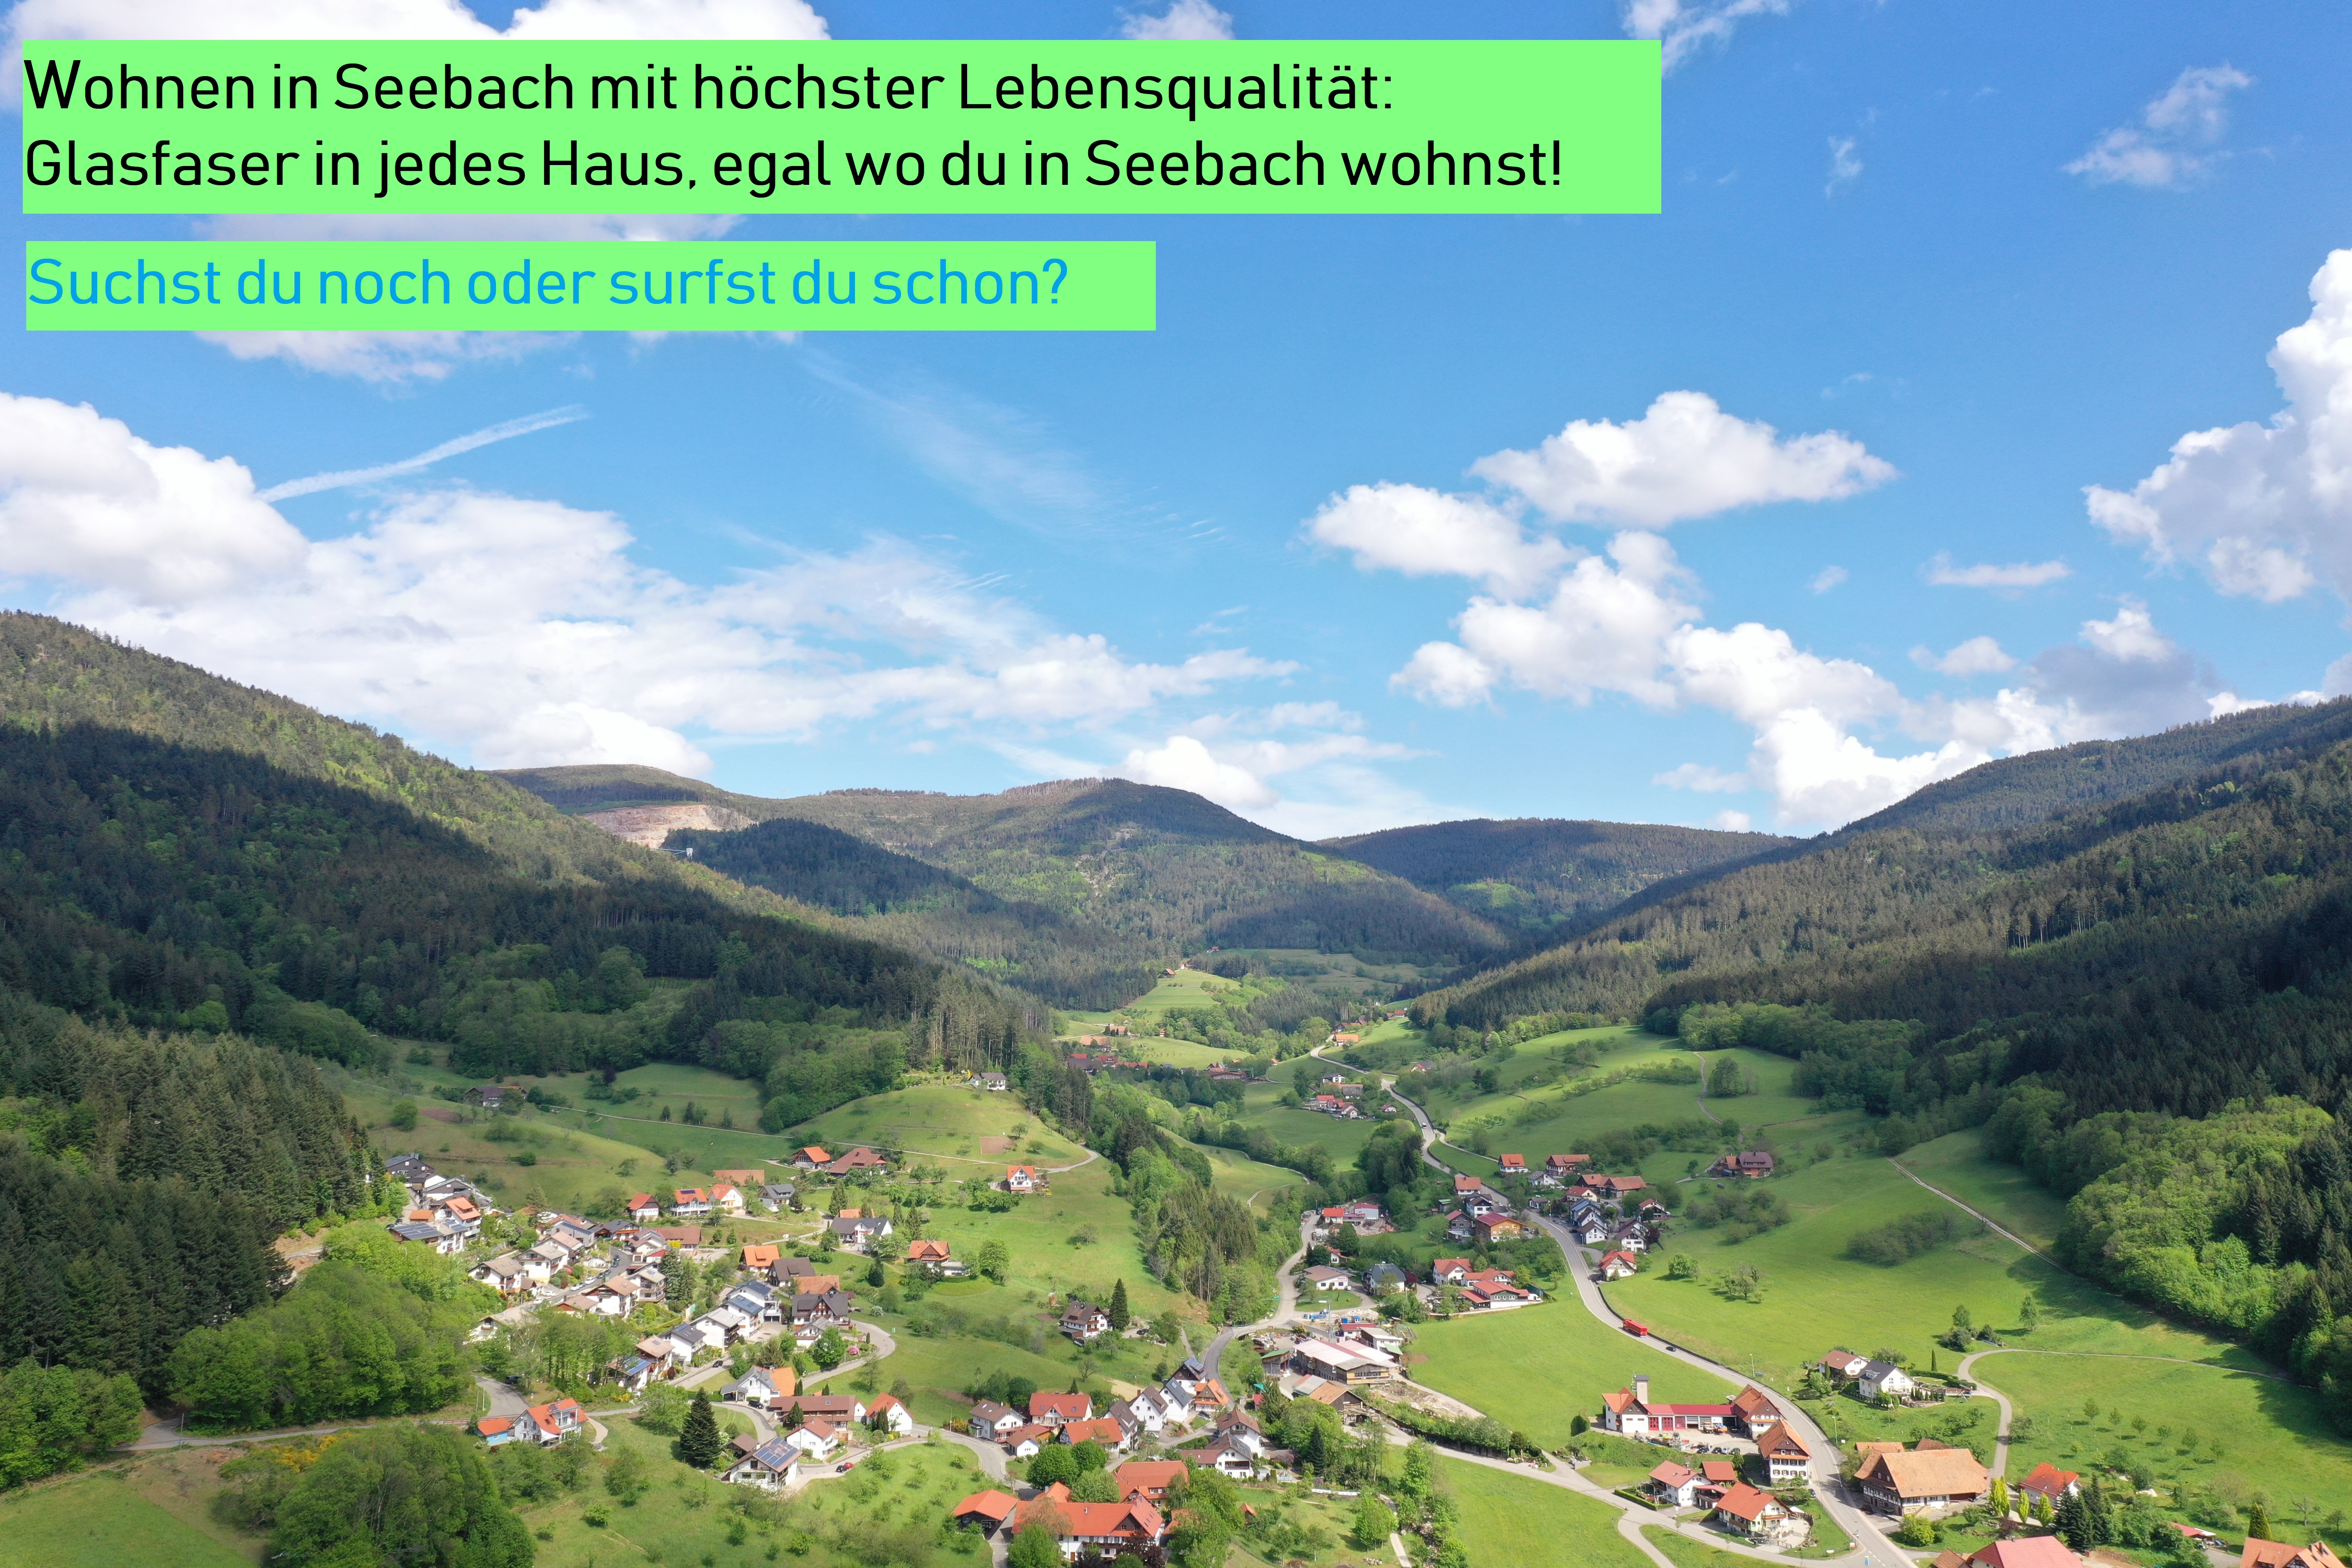                                                     Wohnen in Seebach mit höchster Lebensqualität: Glasfaser in jedes Haus, egal wo du wohnst! Suchst du noch oder surfst du schon?                                    